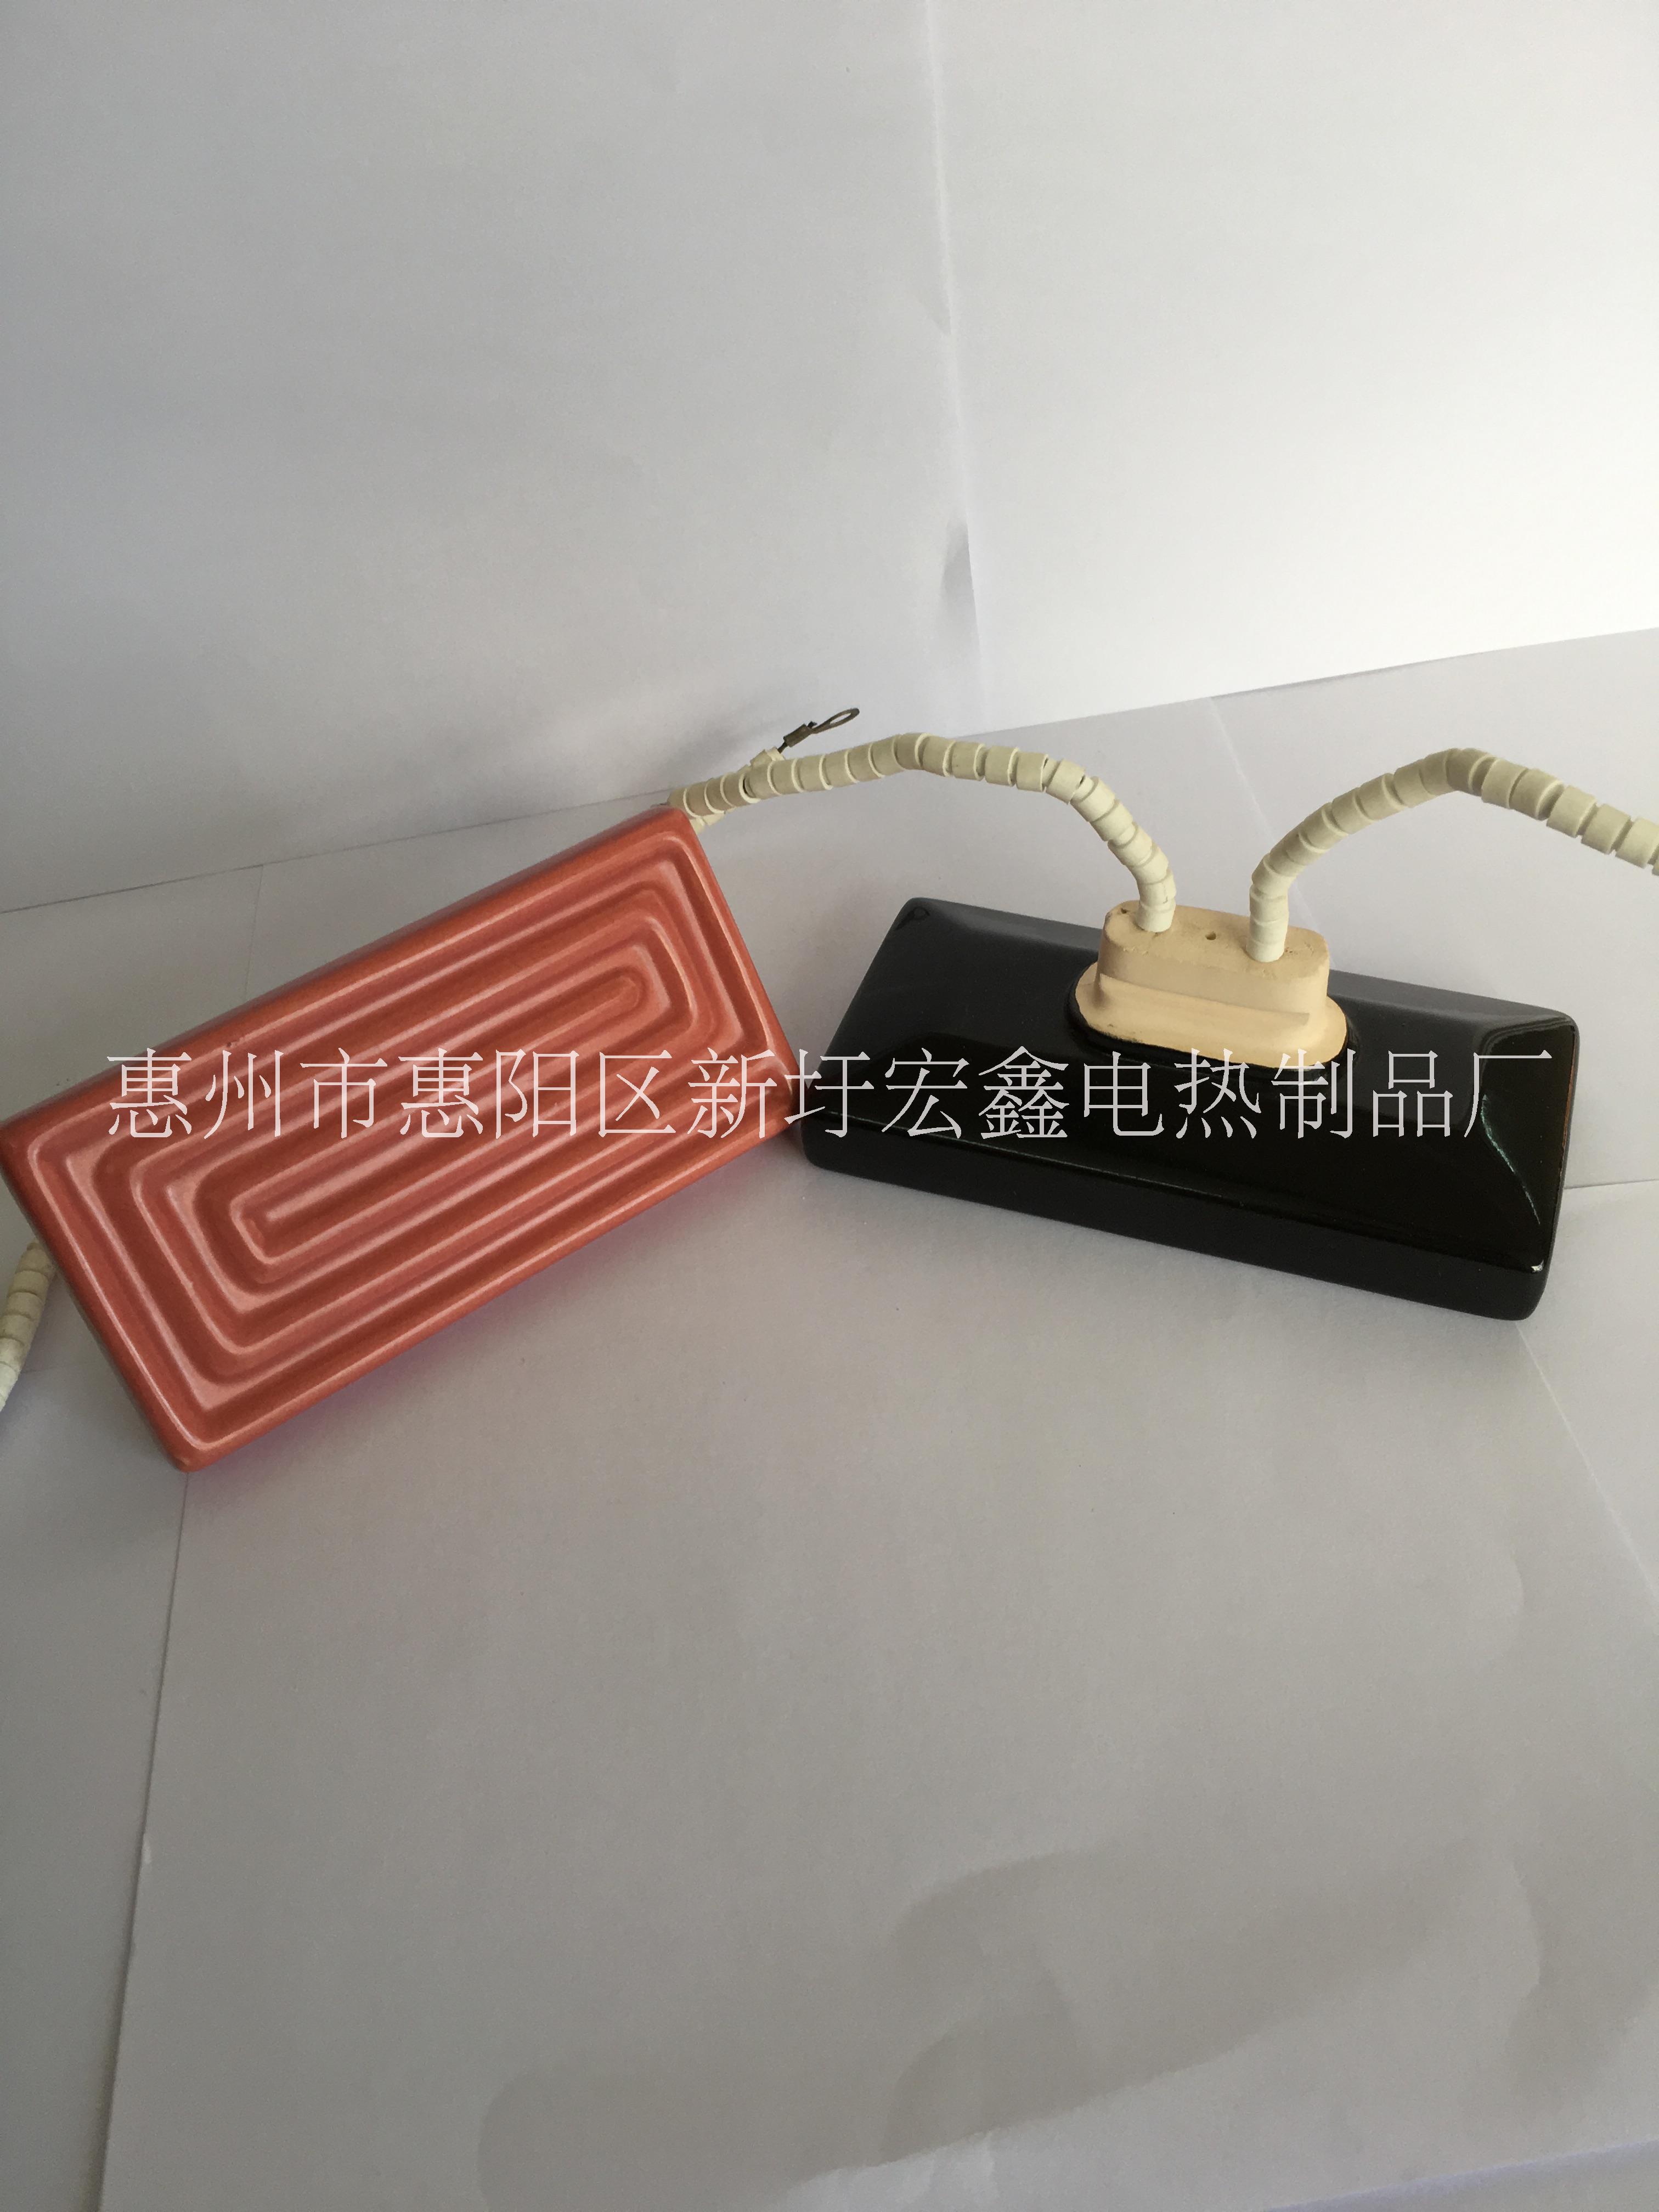 惠州市专业生产红外线陶瓷发热器厂家直销厂家专业生产红外线陶瓷发热器厂家直销